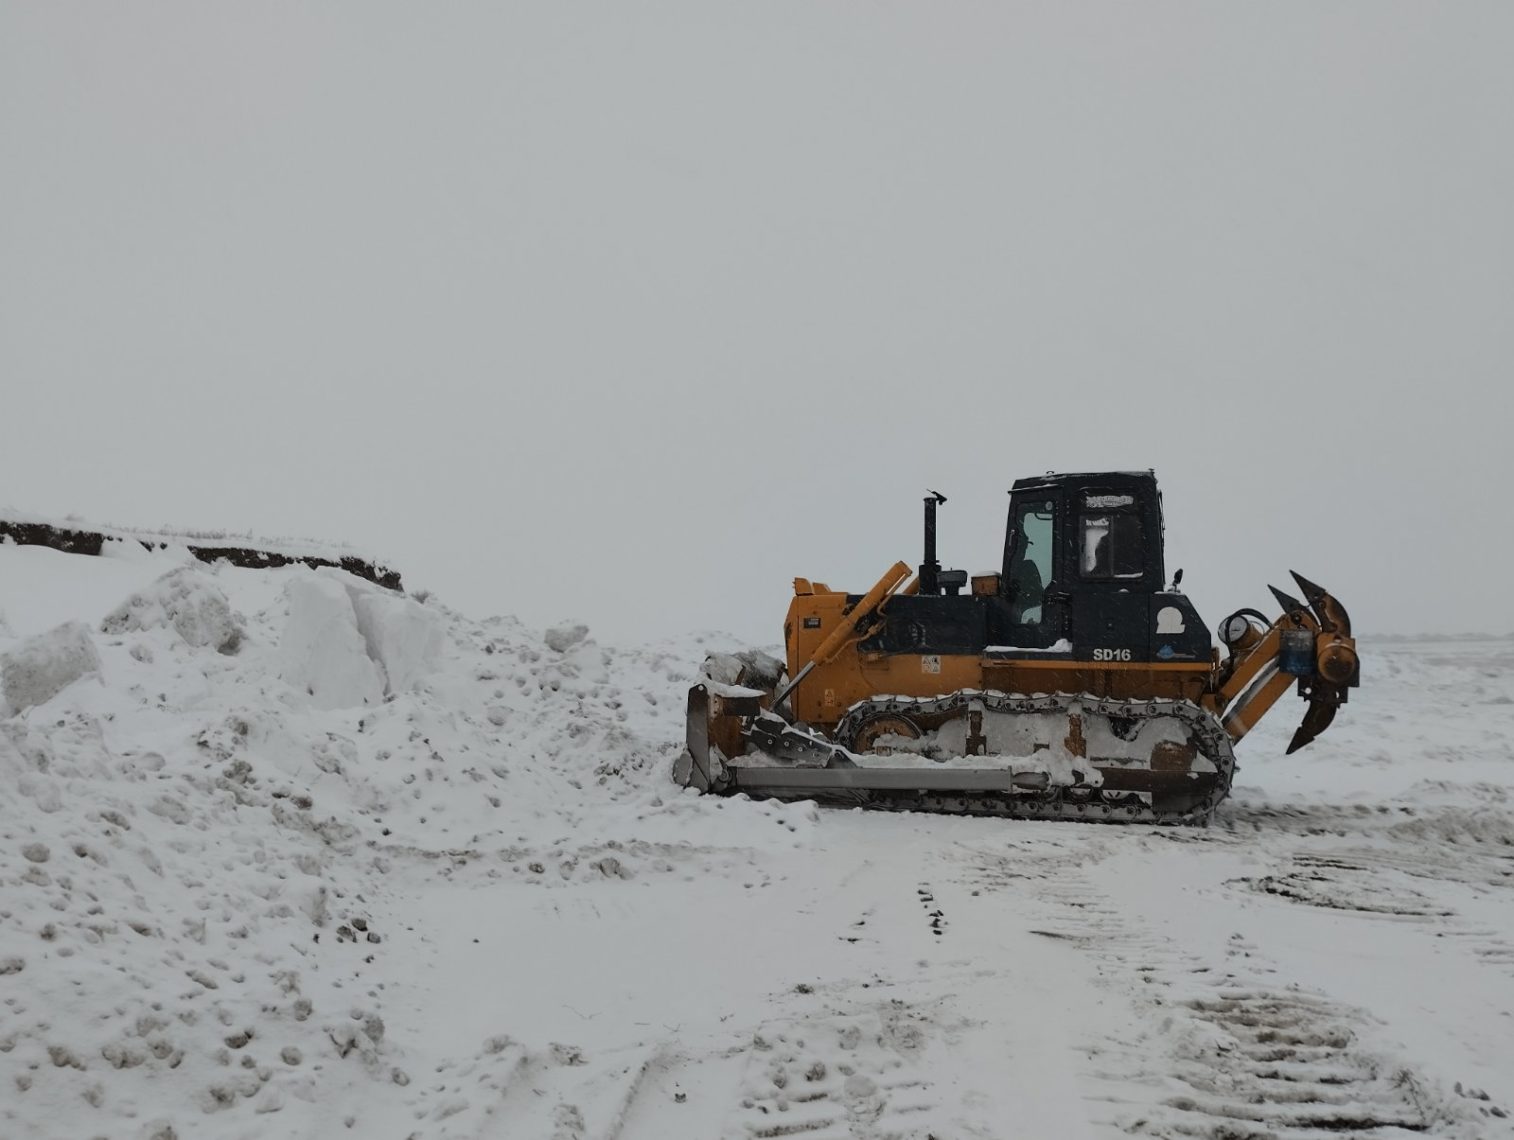 Тракторы и грейдеры расчищают путь. Как проходит уборка снега в Магнитогорске?